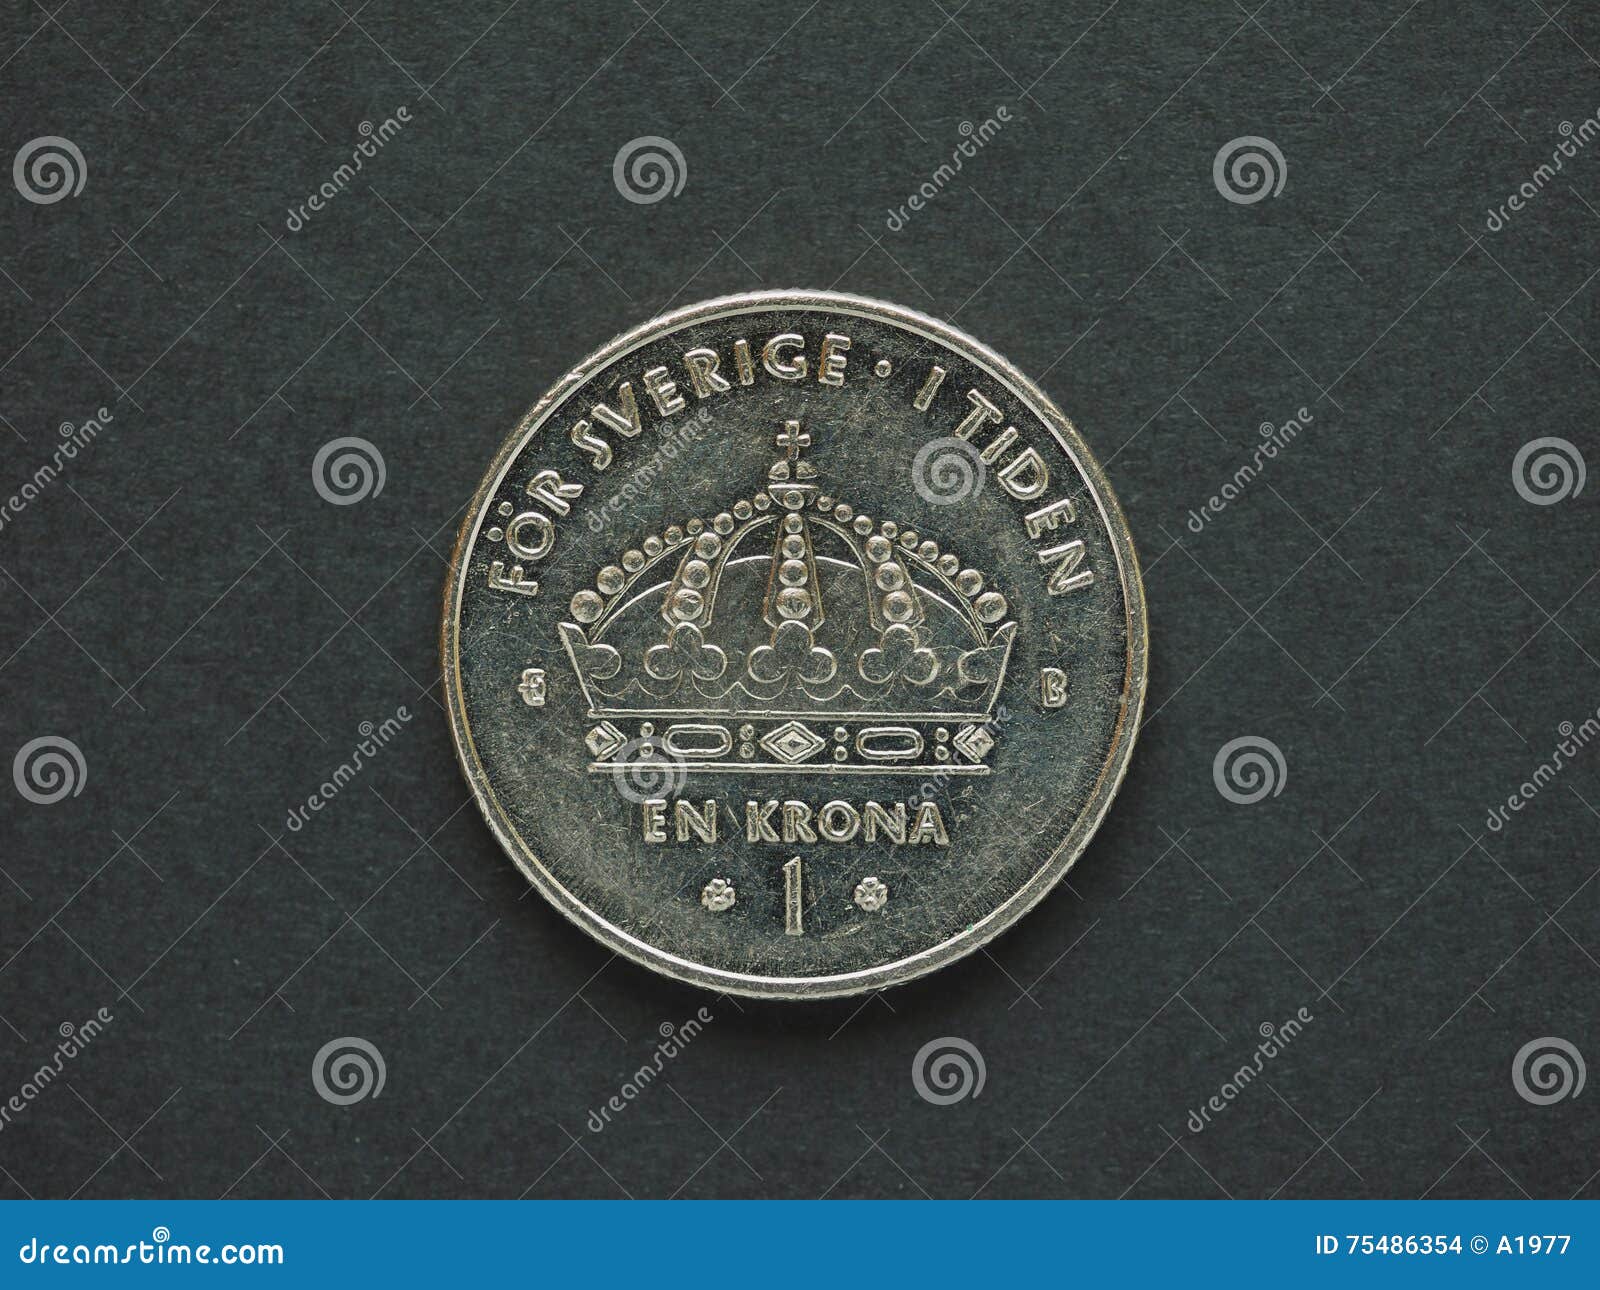 瑞典金钱 库存照片. 图片 包括有 硬币, 欧洲, 斯堪的那维亚, 背包, 瑞典语, 投资, 瑞典, 纸张 - 38060130